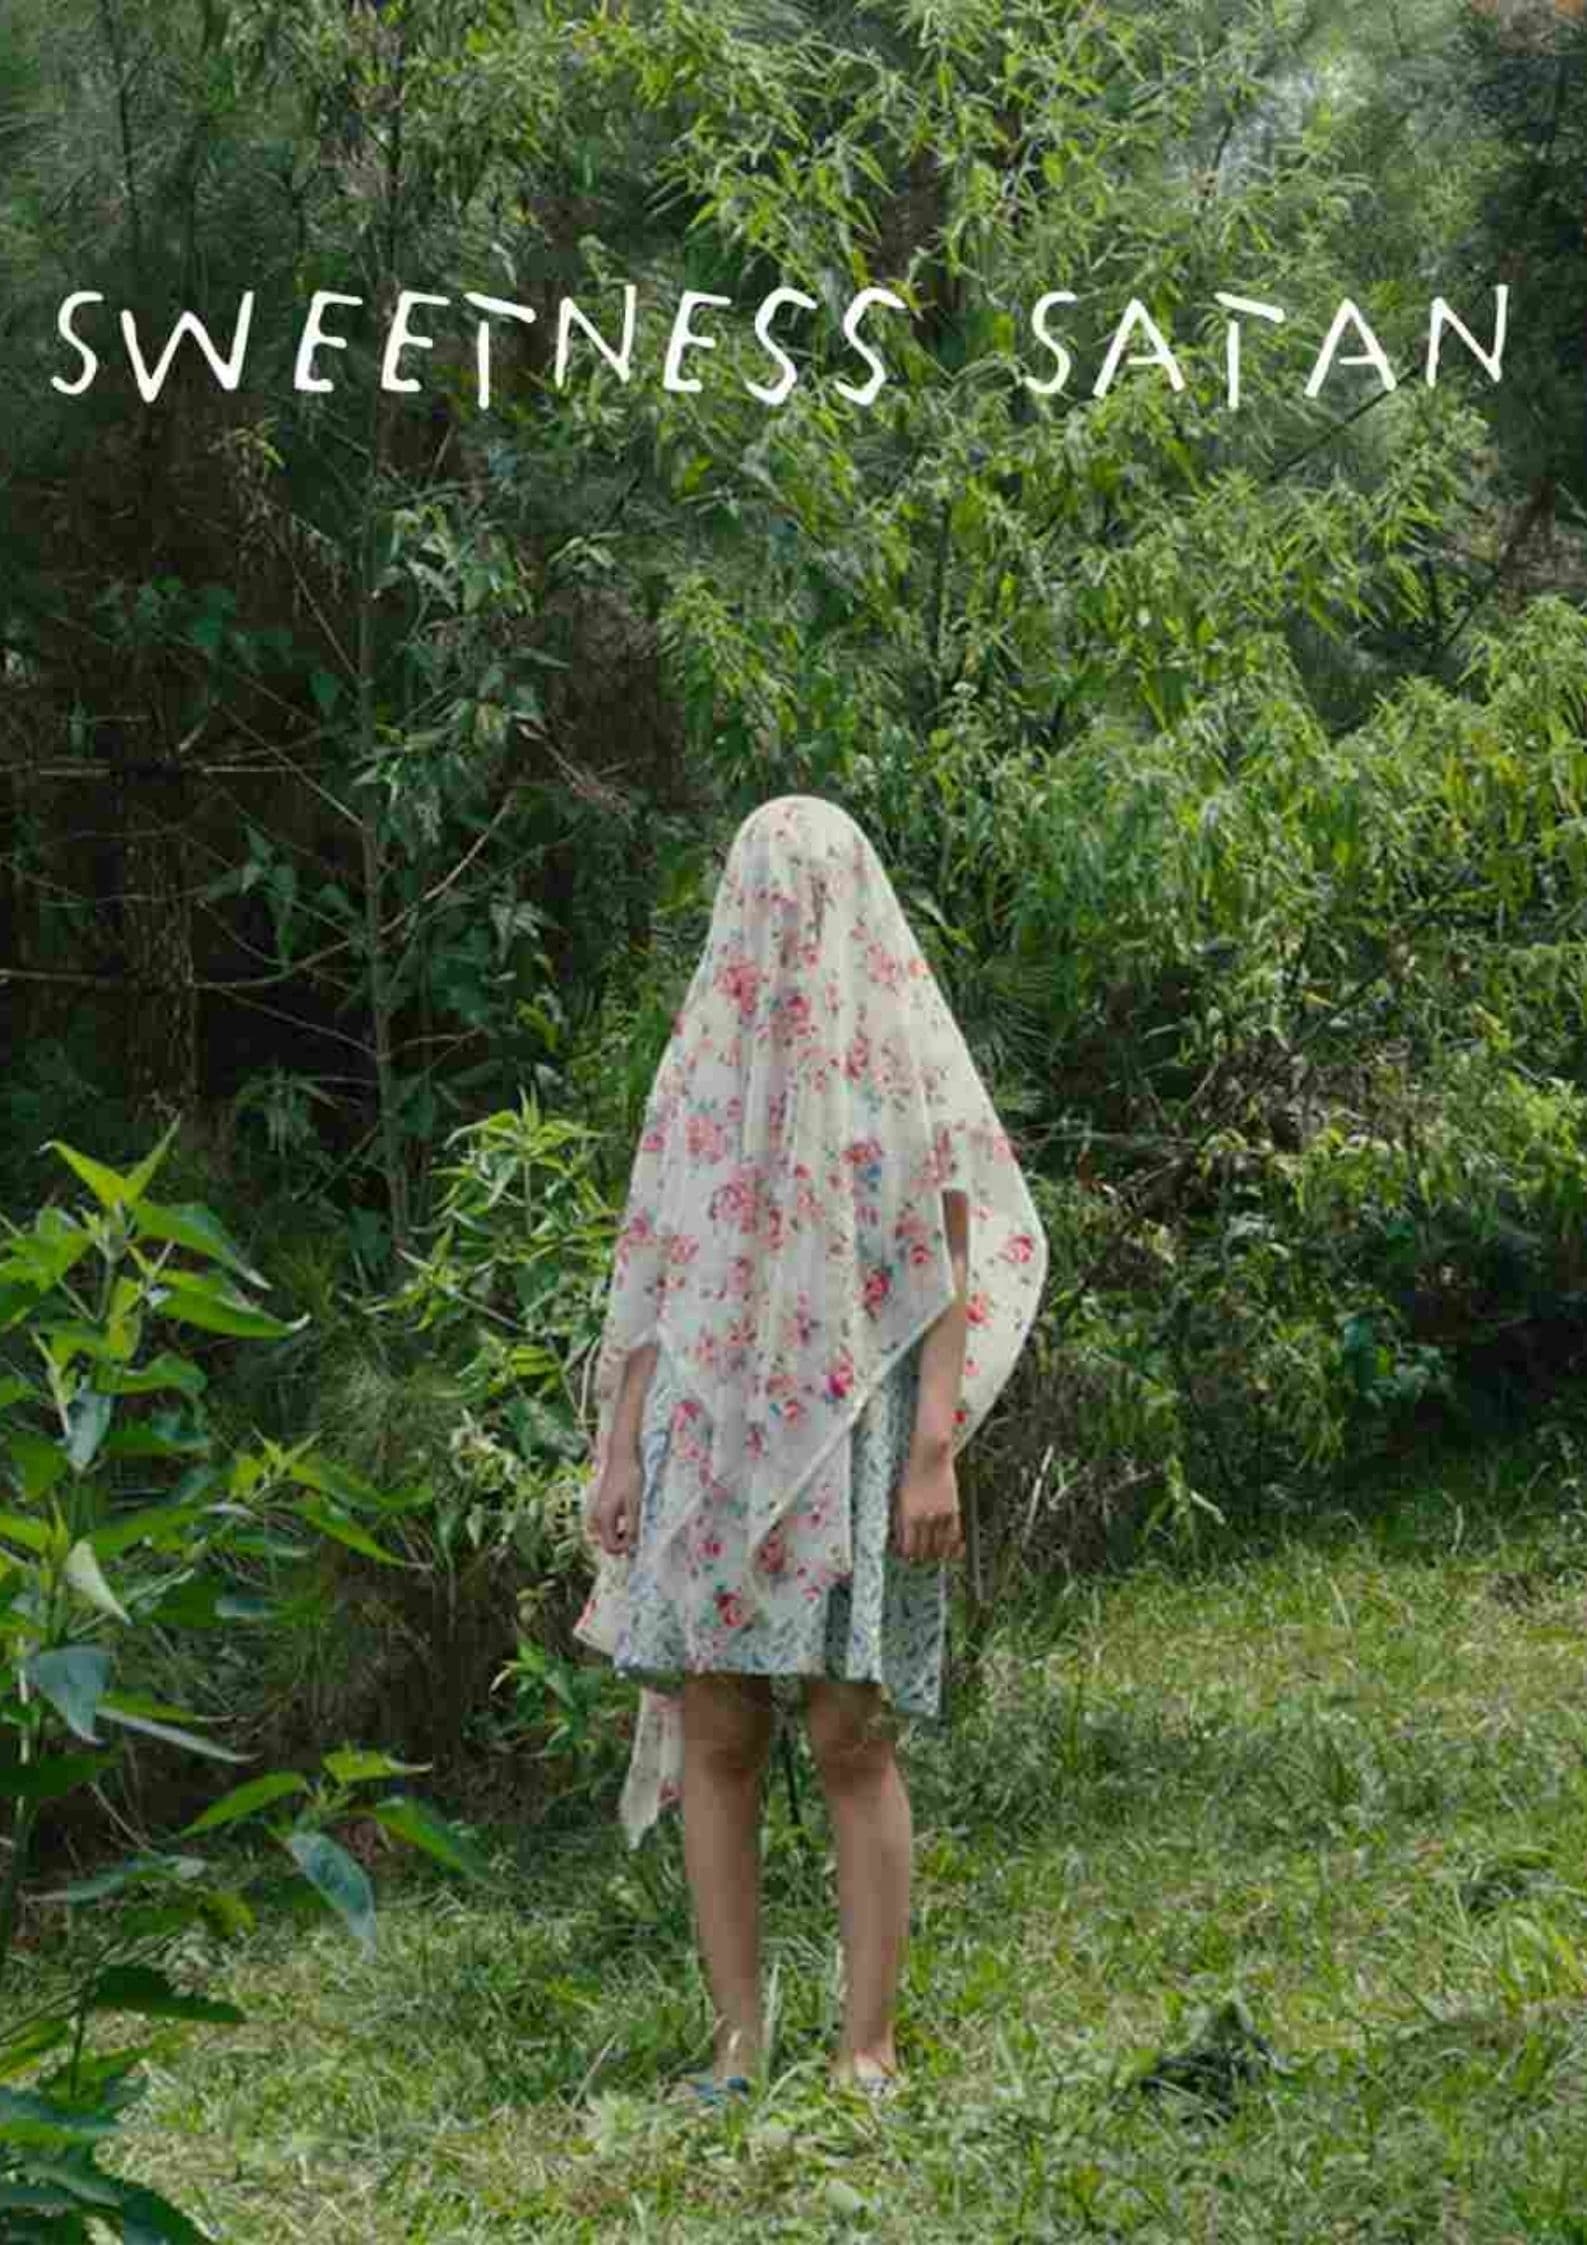 Sweetness Satan (2017)